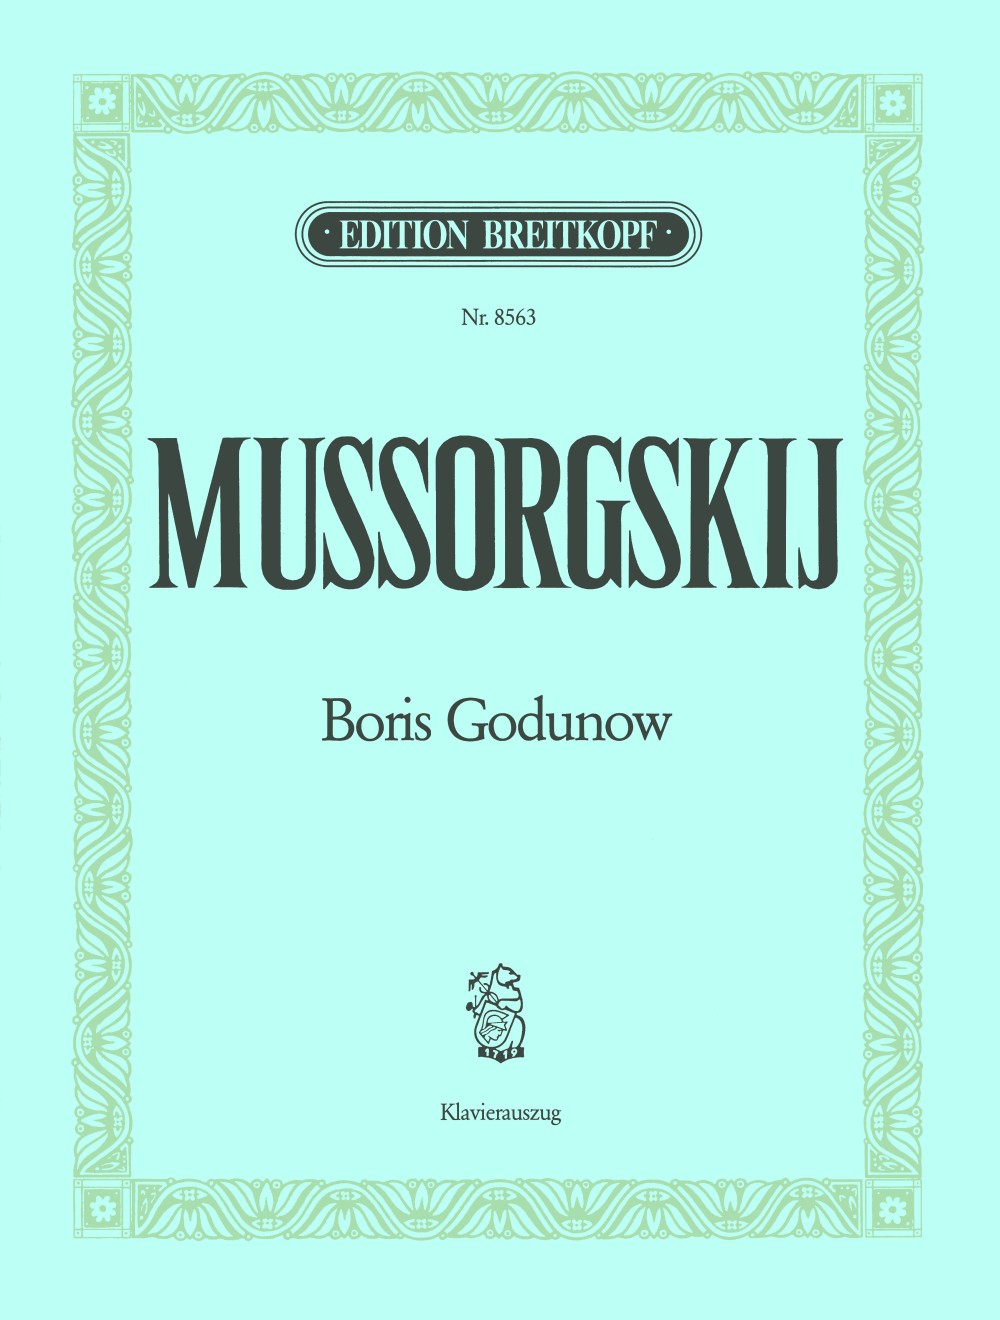 Moussorgsky Boris Godunov - Vocal Score